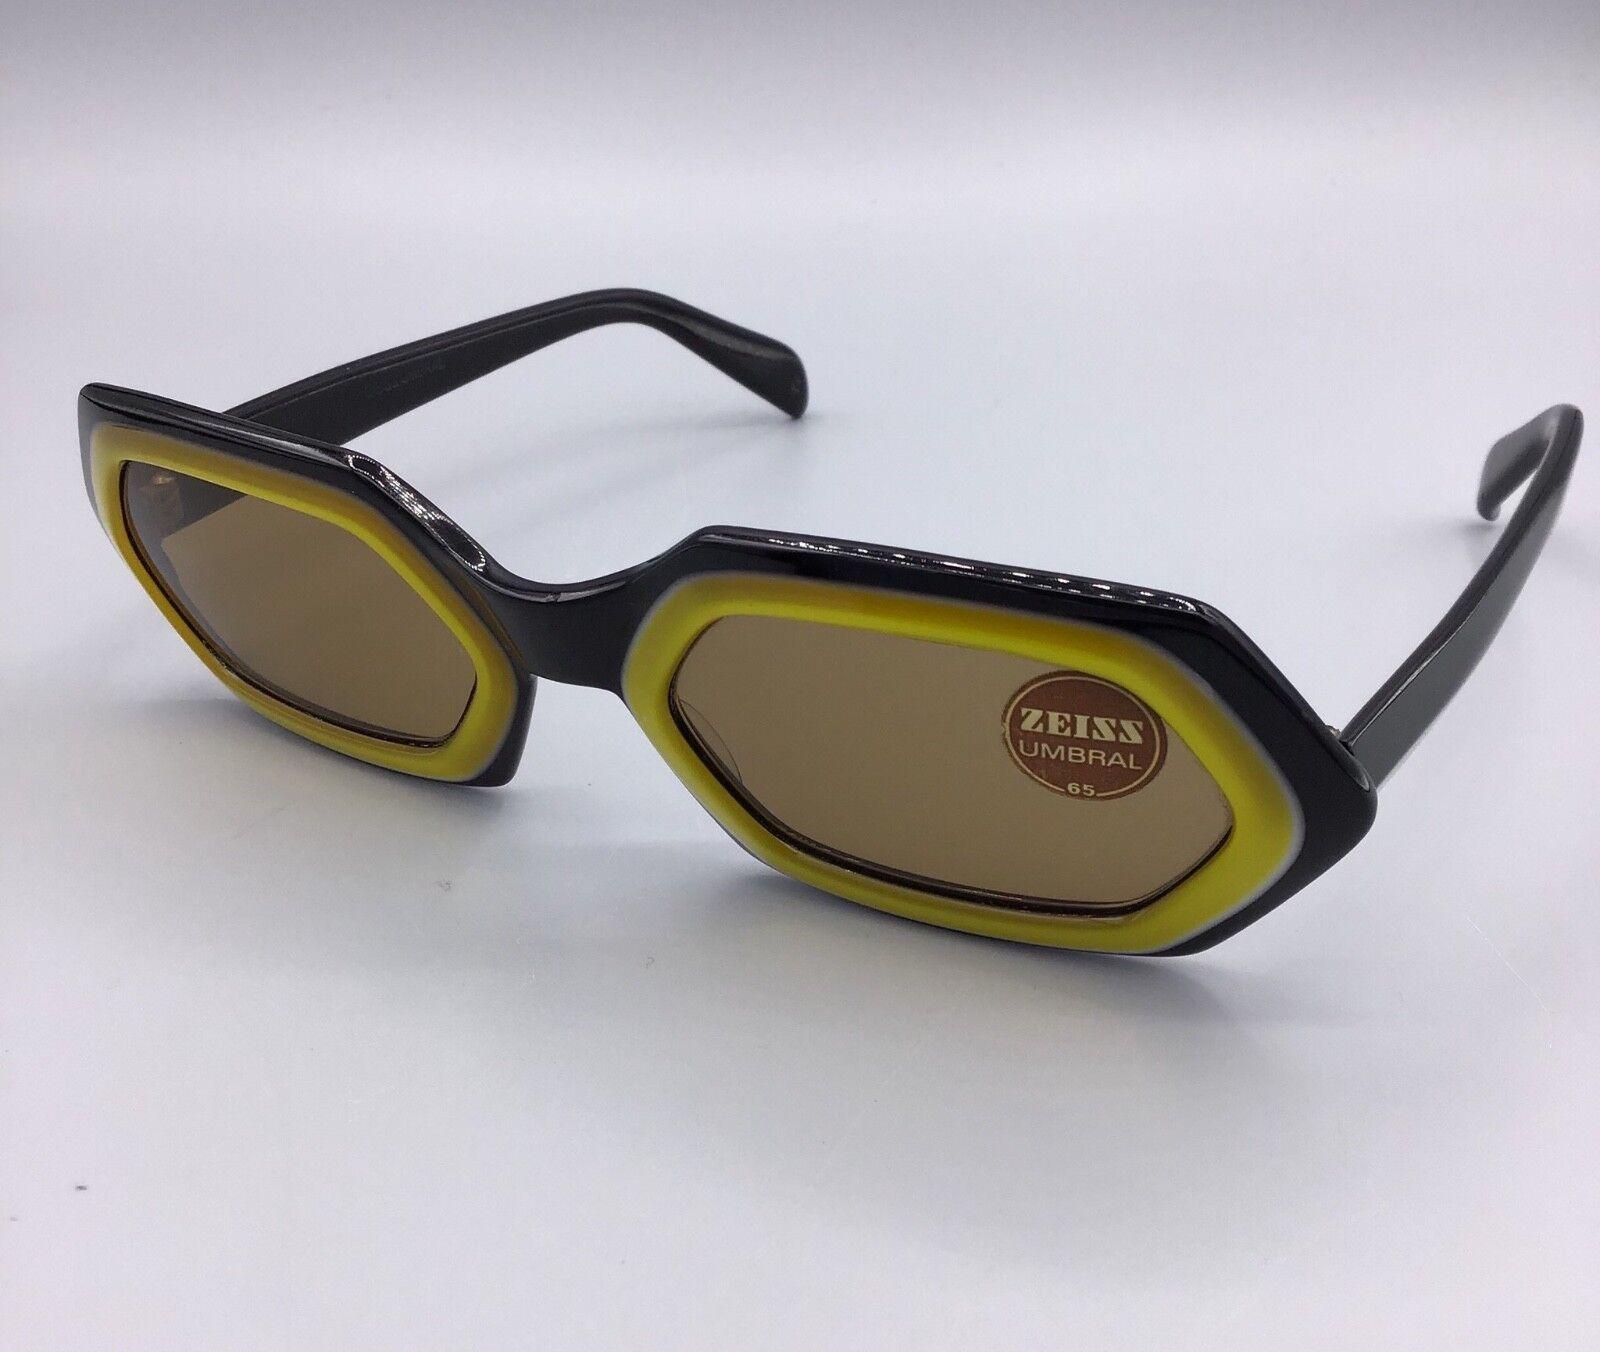 Zeiss Umbral Vintage Sunglasses Occhiale da Sole Sonnenbrillen Lunettes 60s